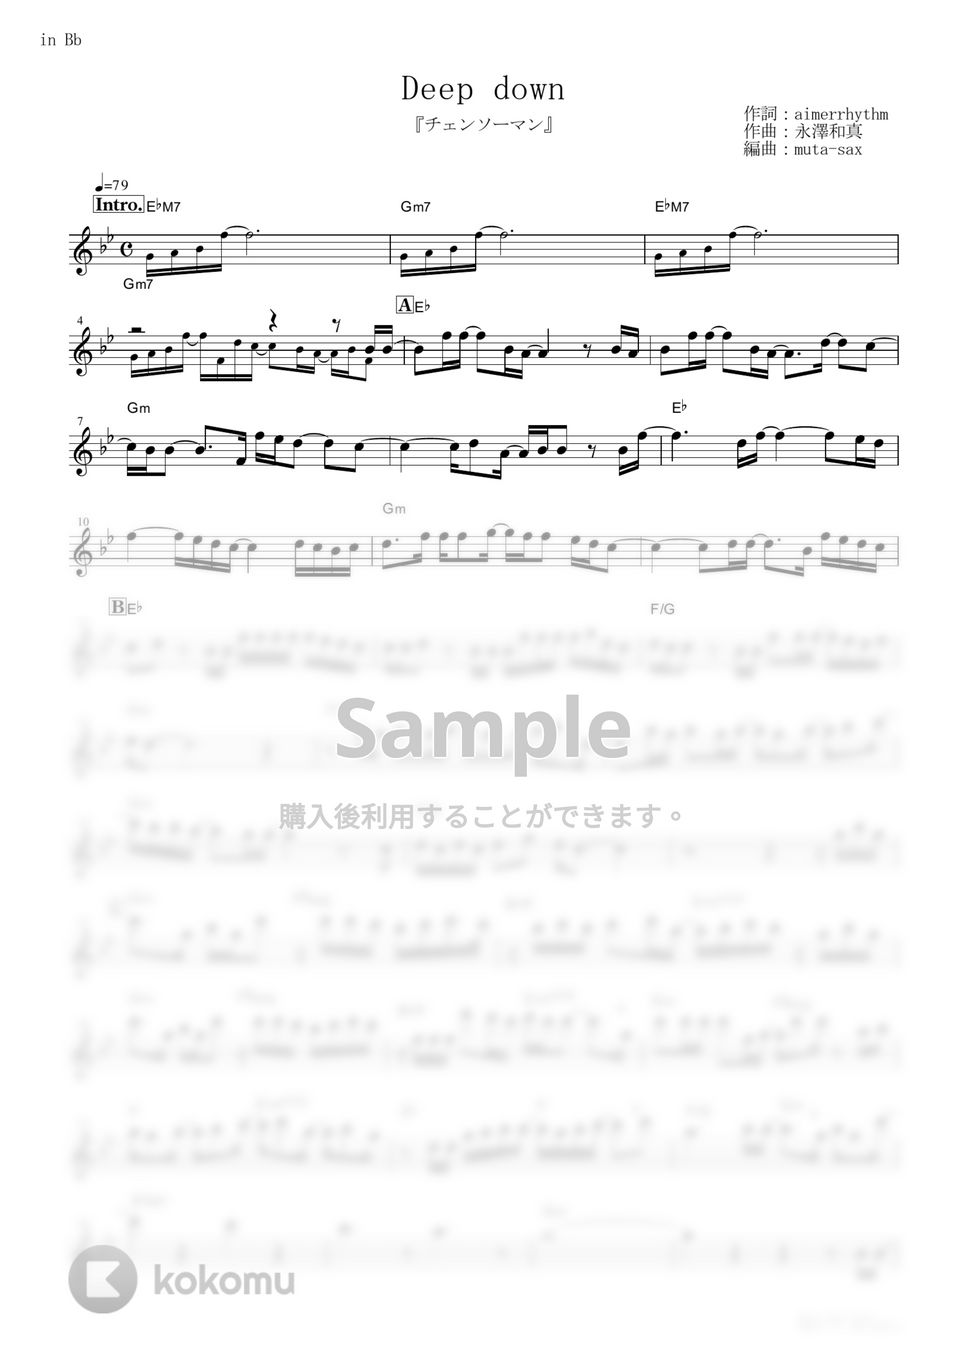 Aimer - Deep down (『チェンソーマン』 / in Bb) by muta-sax